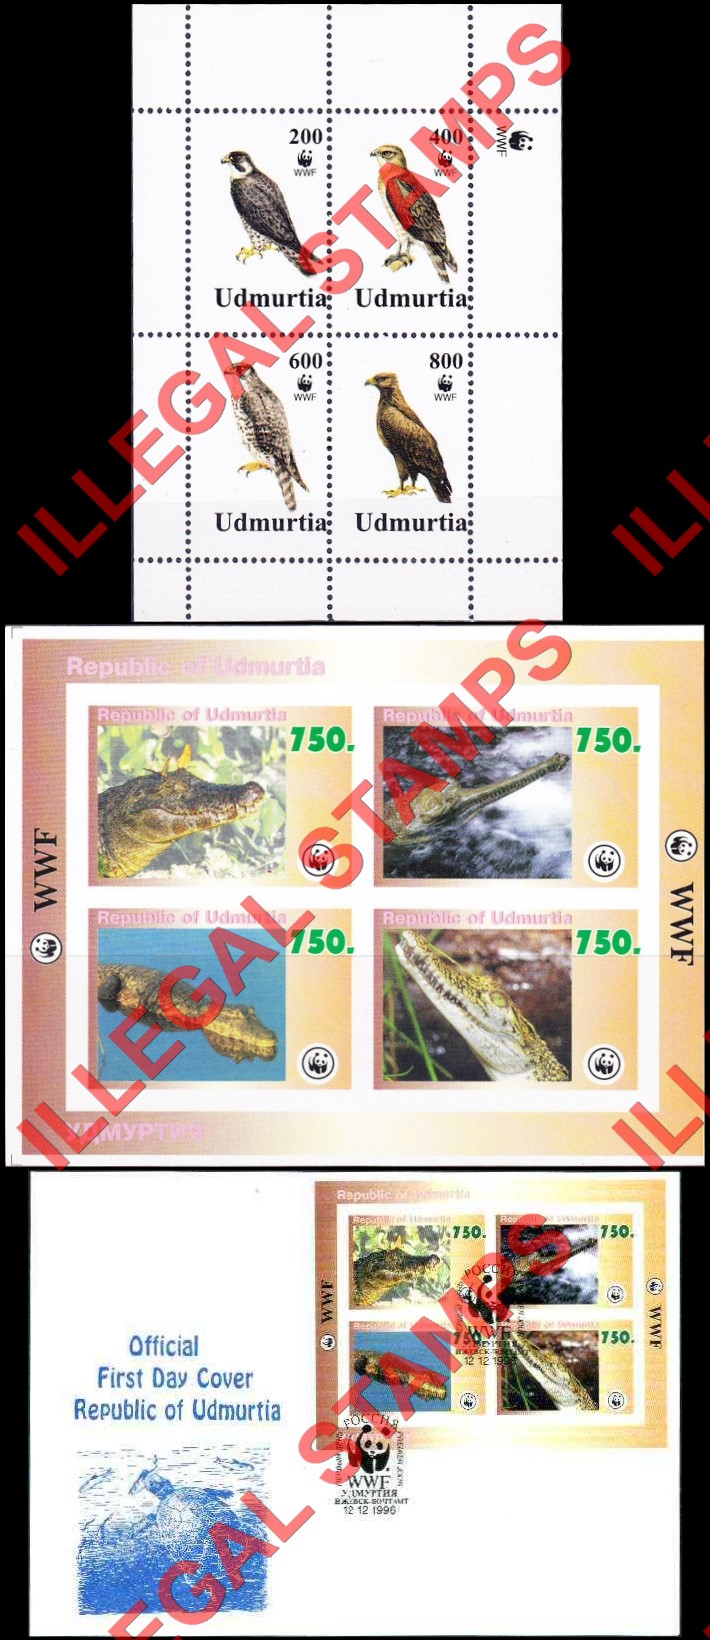 Republic of Udmurtia 1996 Counterfeit Illegal Stamps